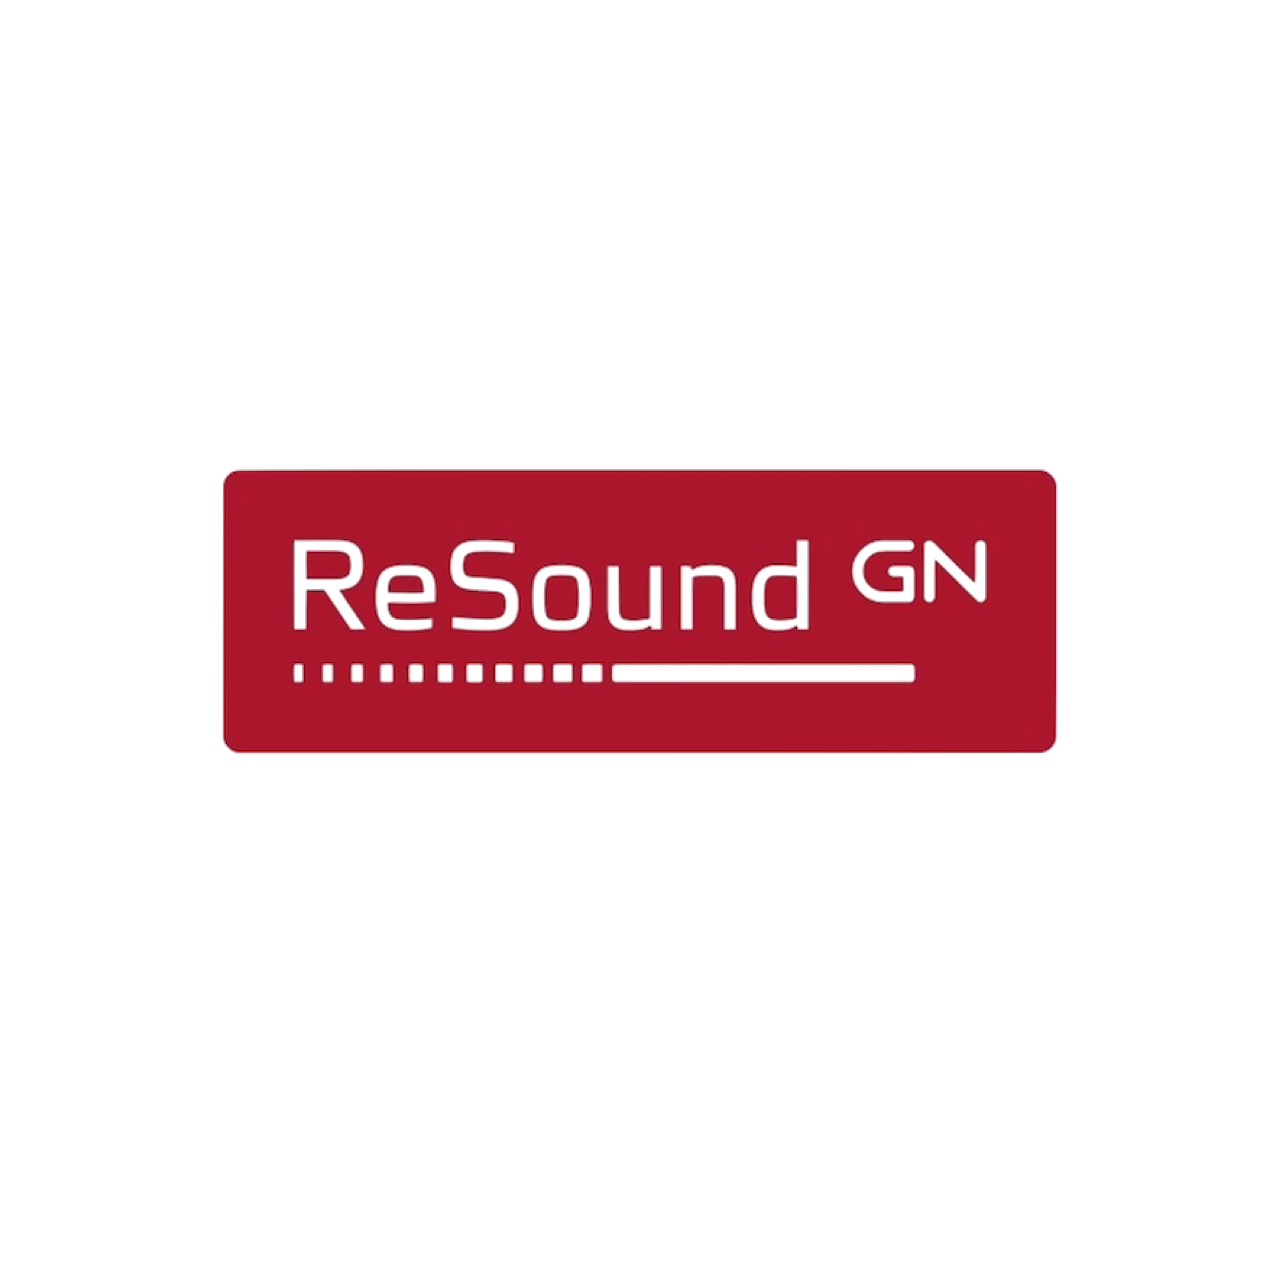 GN Resound - Profitieren Sie von unserem Angebot des weltweiten Marktführers für smarte Hörlösungen